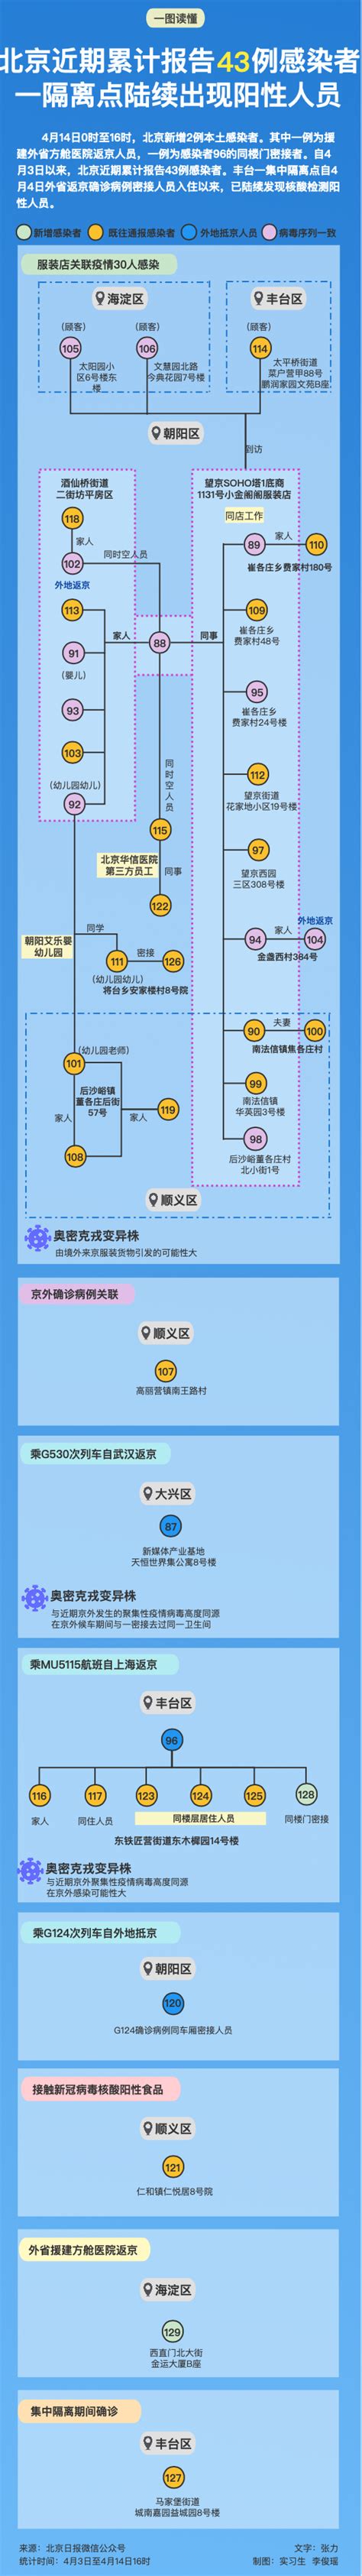 北京近期报告43例感染者 关联、风险点位一图捋清_公会界